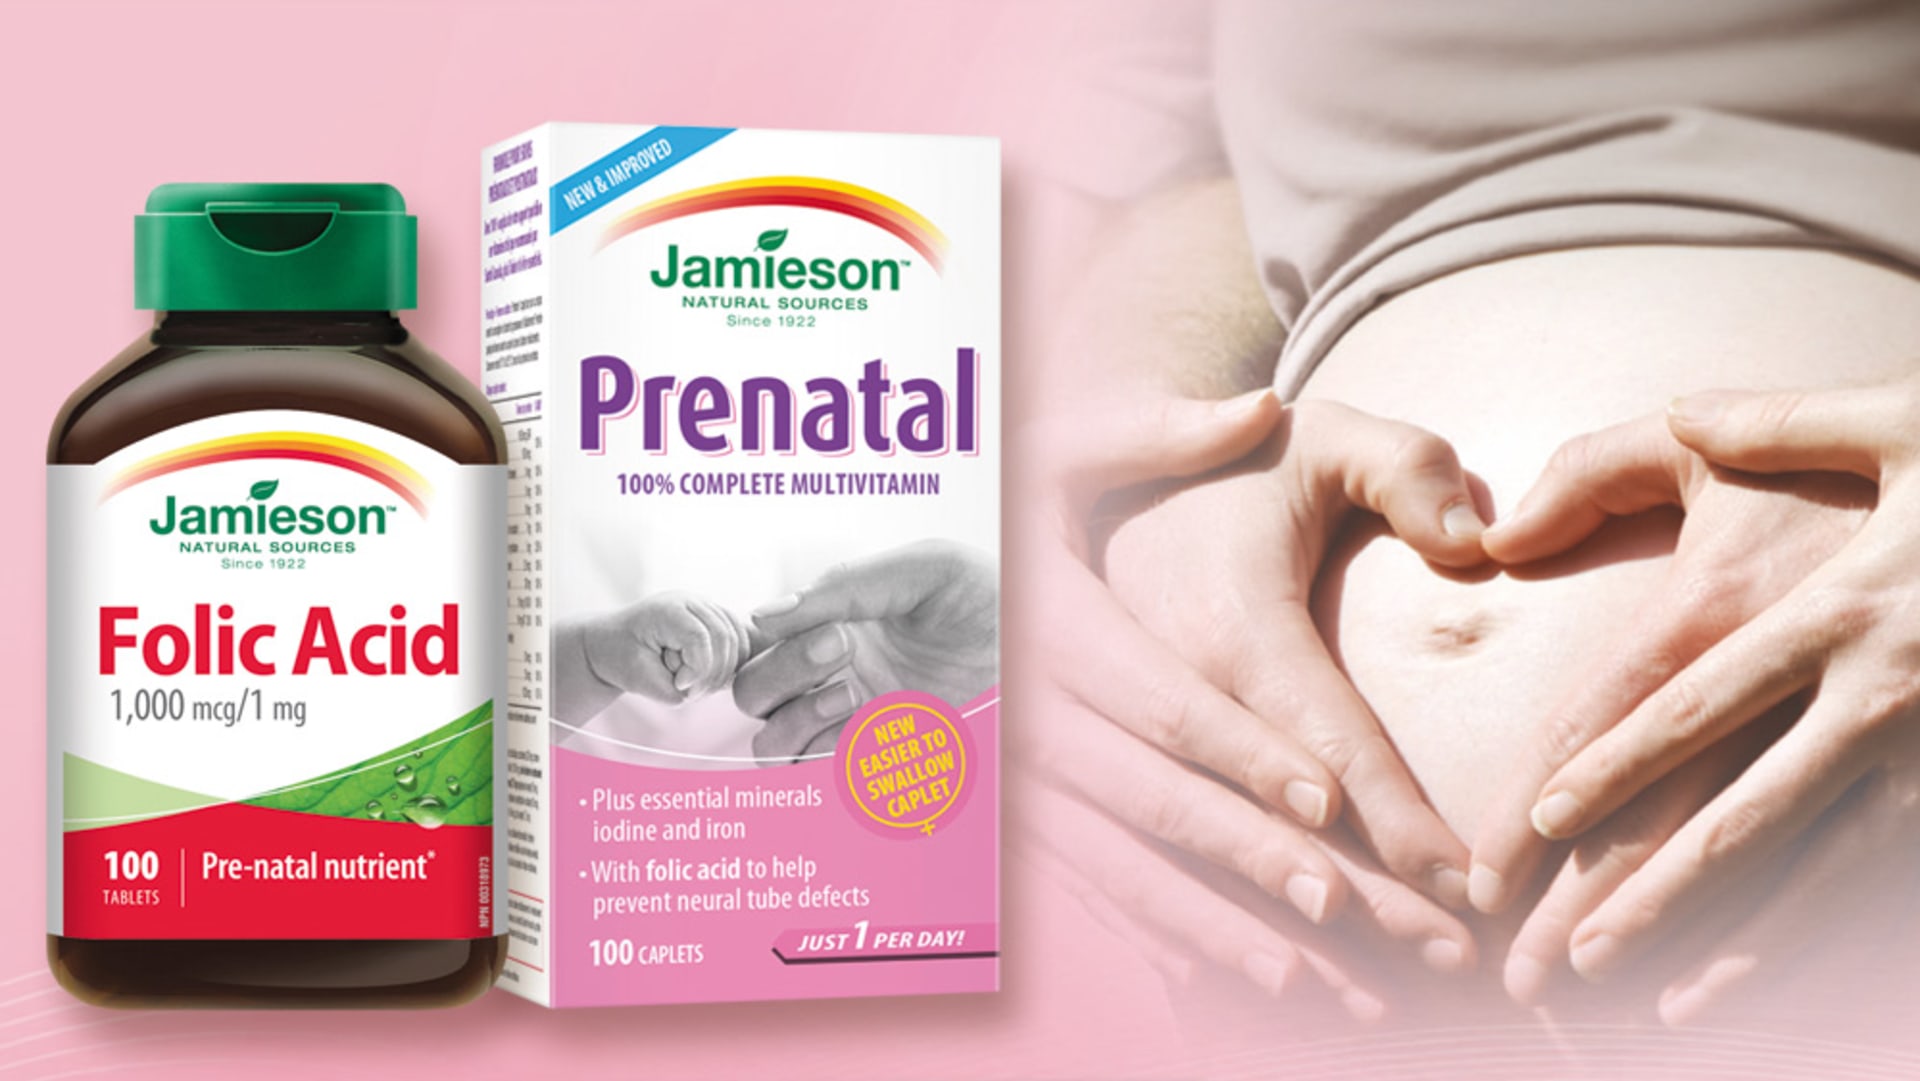 Doplňky stravy Jamieson: Kyselina listová a Prenatal COMPLETE multivitamín